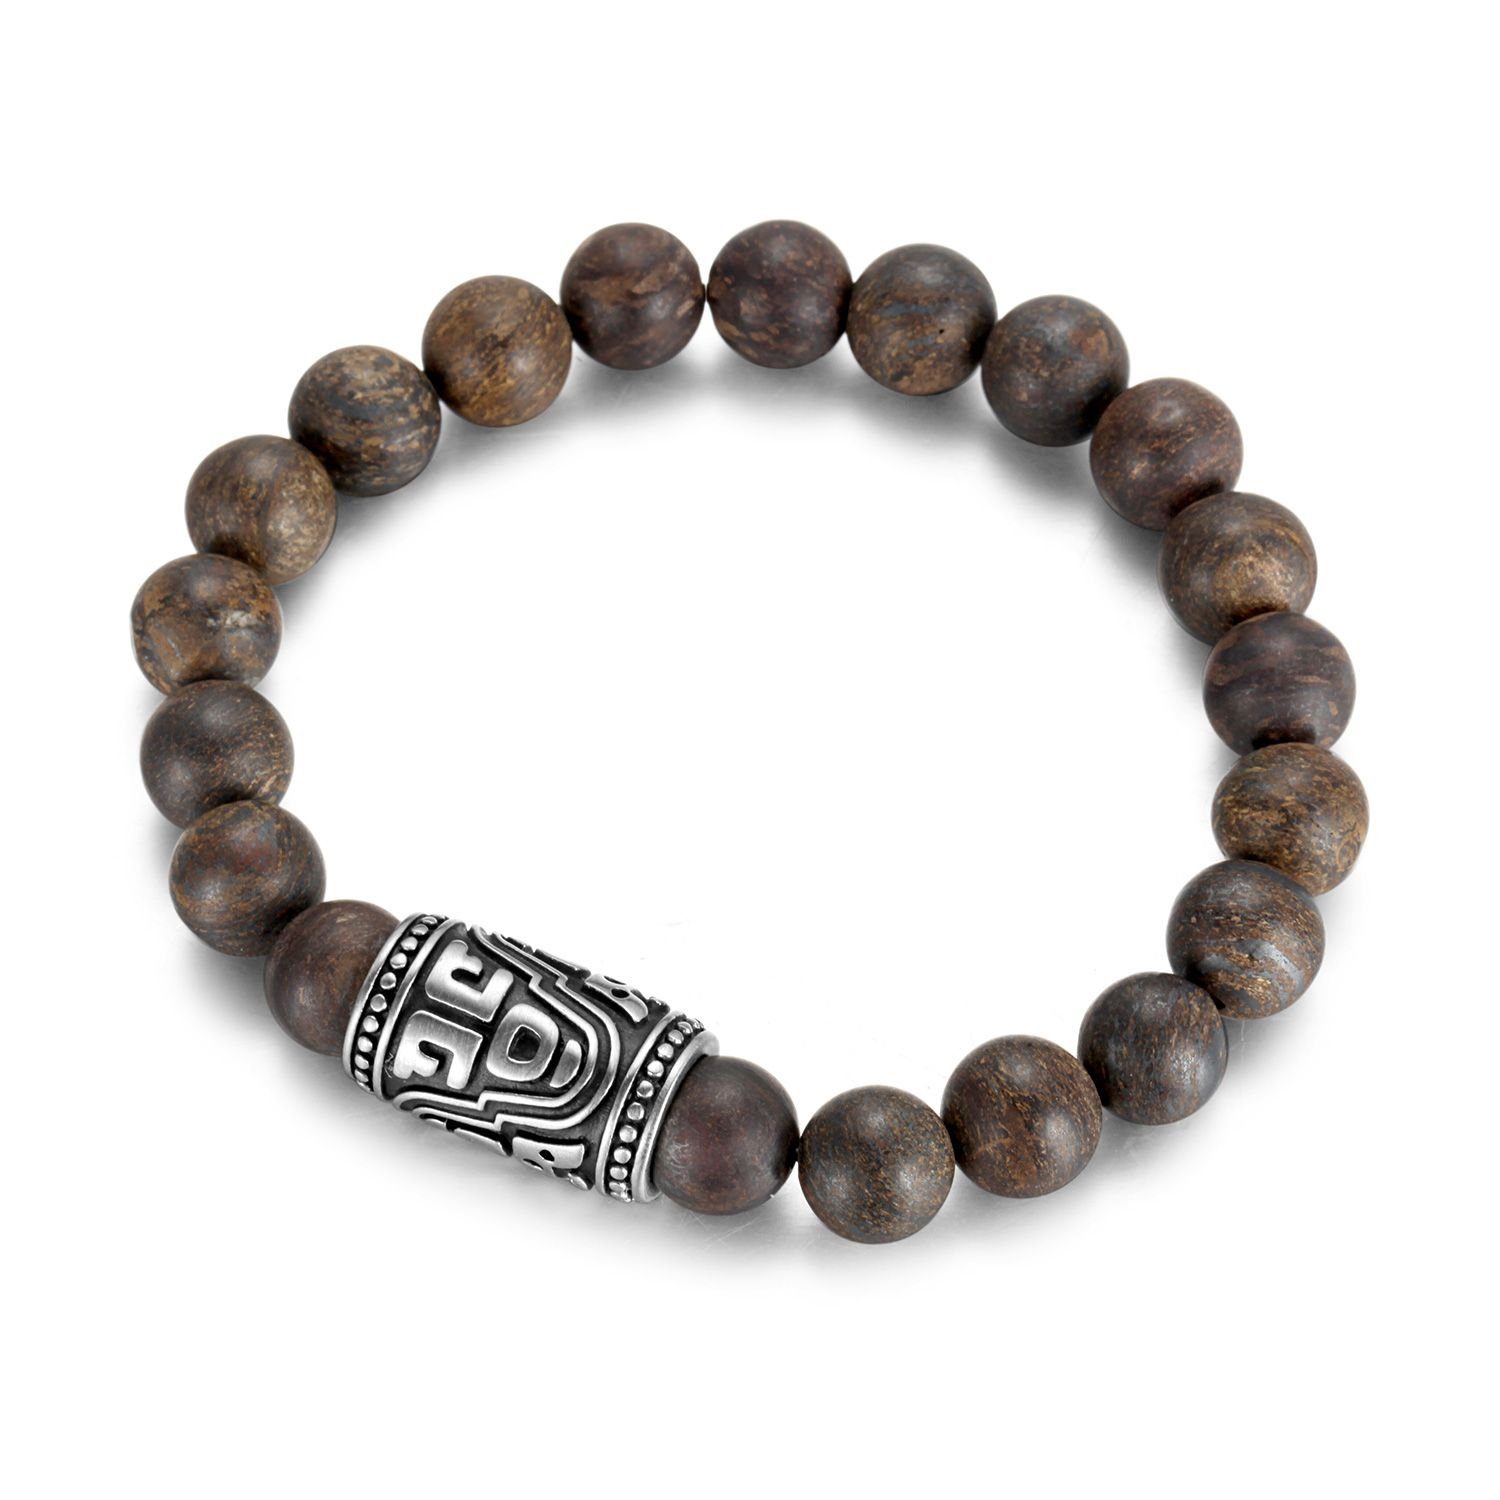 Kingka Armband „Urban Rocks“ Stretch-Bead-Armband mit einzigartigen echten Bronzite Steinen und rockigem center piece, mit Bronzit